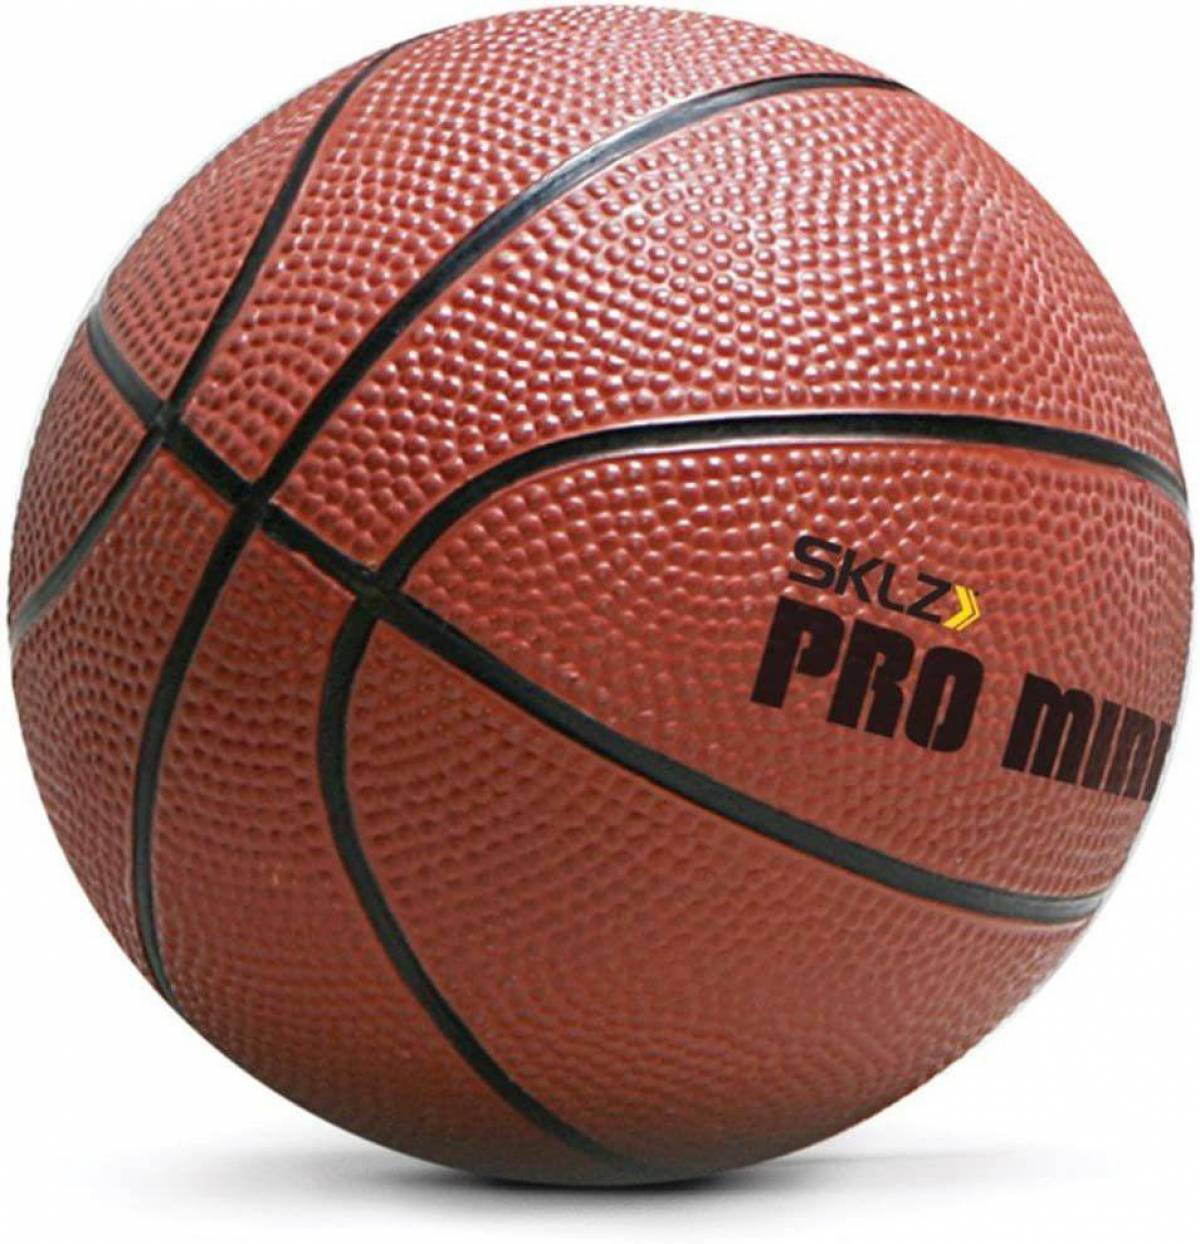 Баскетбольные мячи для детей. Мяч баскетбольный мини Баскет 5. Баскетбольный мяч lel Pro b200. Nice shoot мяч баскетбольный.